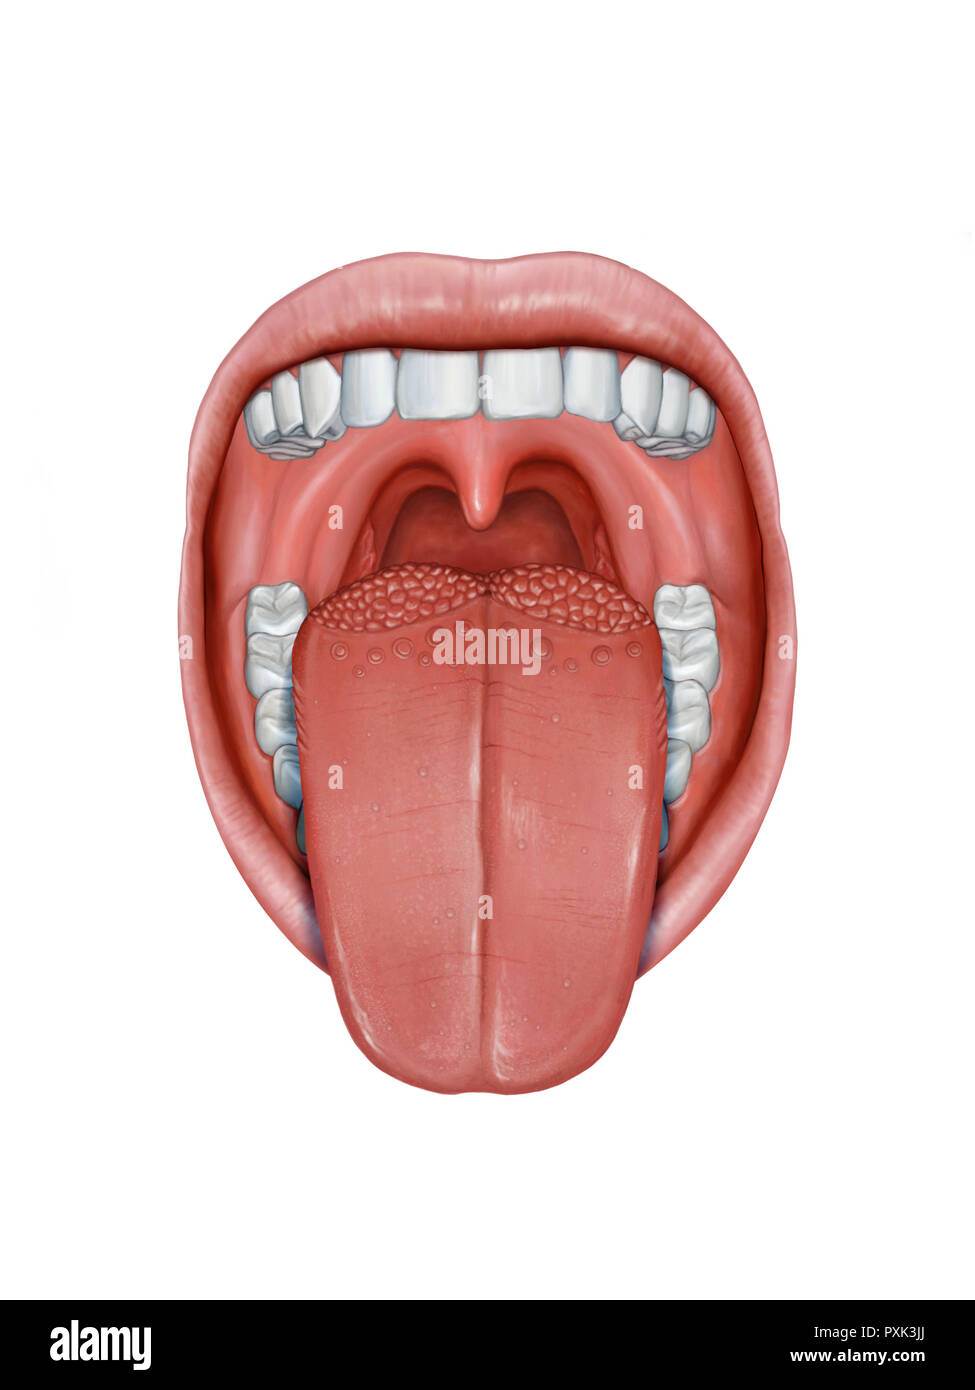 Bouche ouverte avec la langue qui sort, montrant ses différentes parties de l'anatomie. Illustration numérique. Banque D'Images